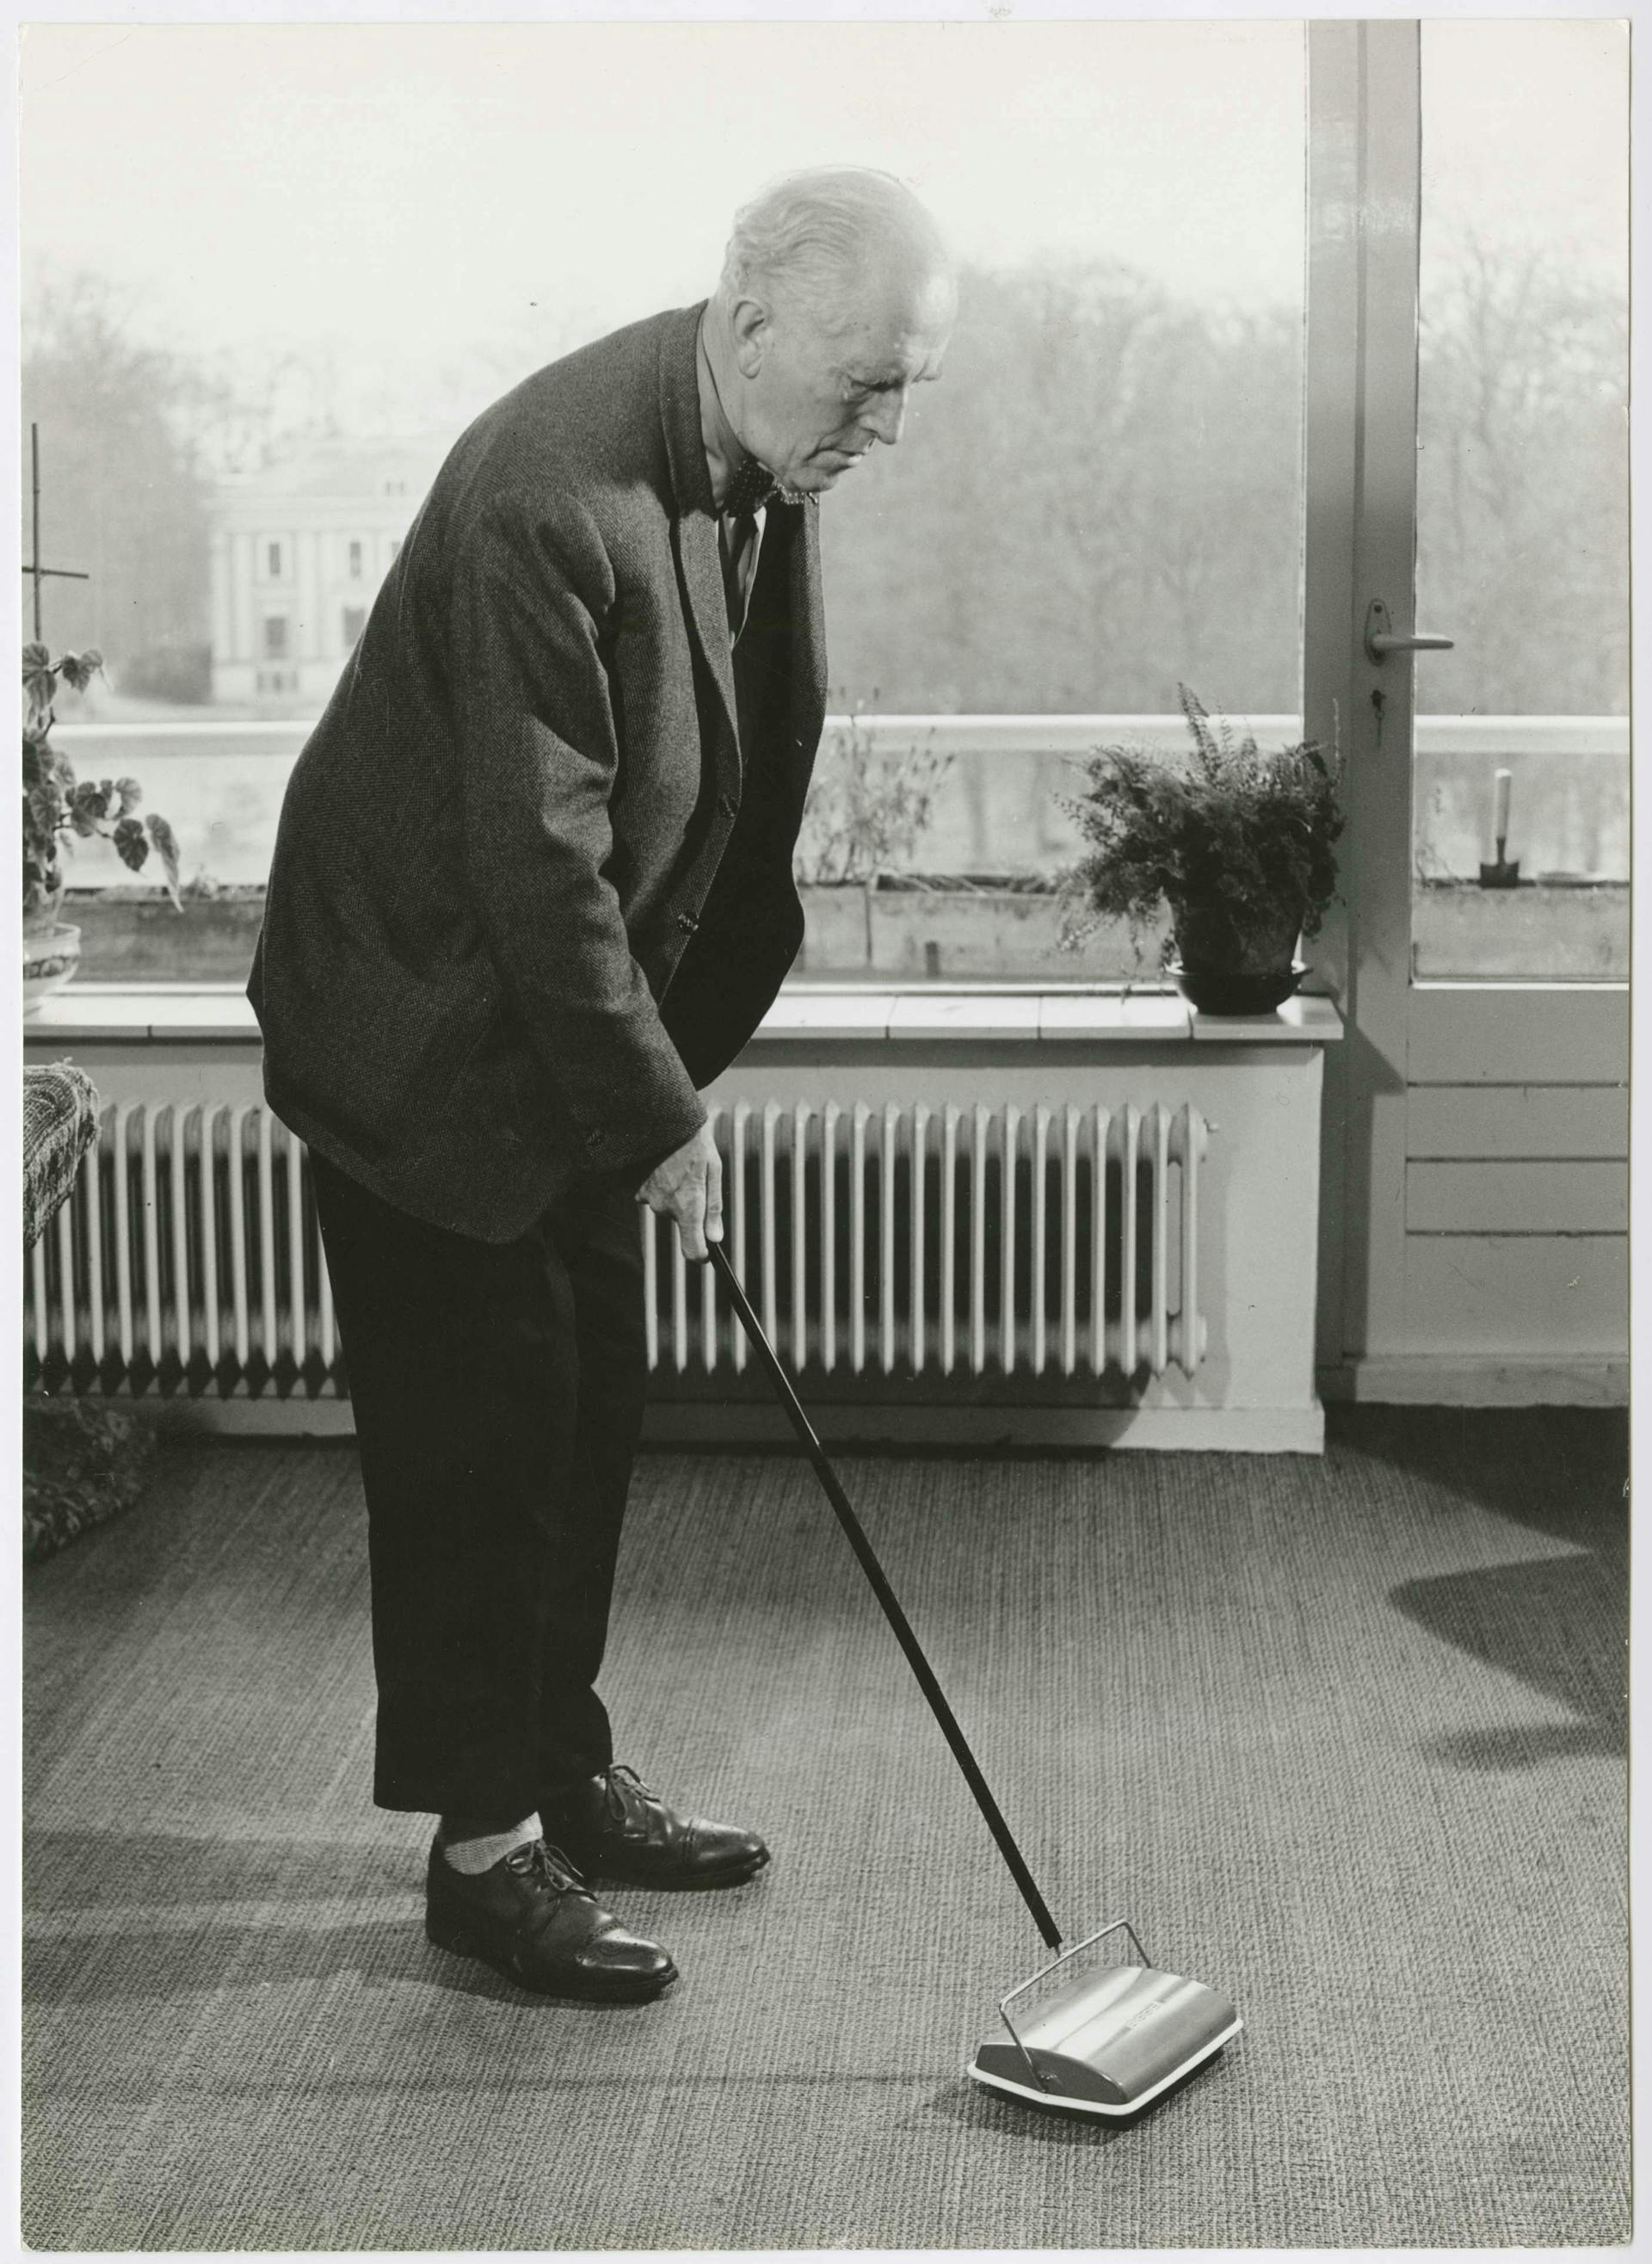  Modelwoning bejaardenwoning, ca. 1965. Opdrachtgever: Stichting Goed Wonen. Collectie Het Nieuwe Instituut, SGWO f3-1